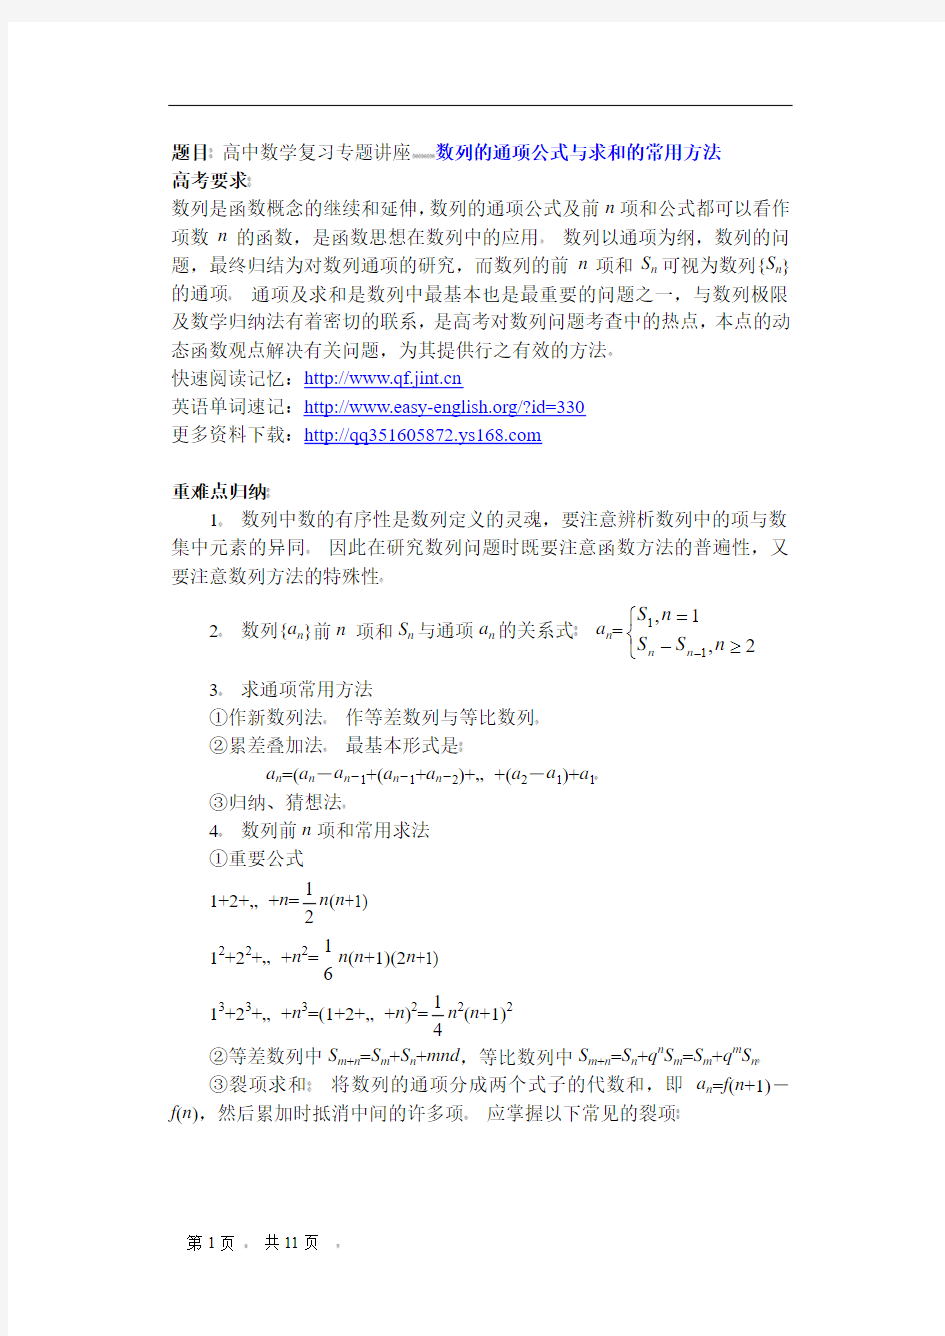 高中数学复习专题讲座(第13讲)_数列的通项公式与求和的常用方法